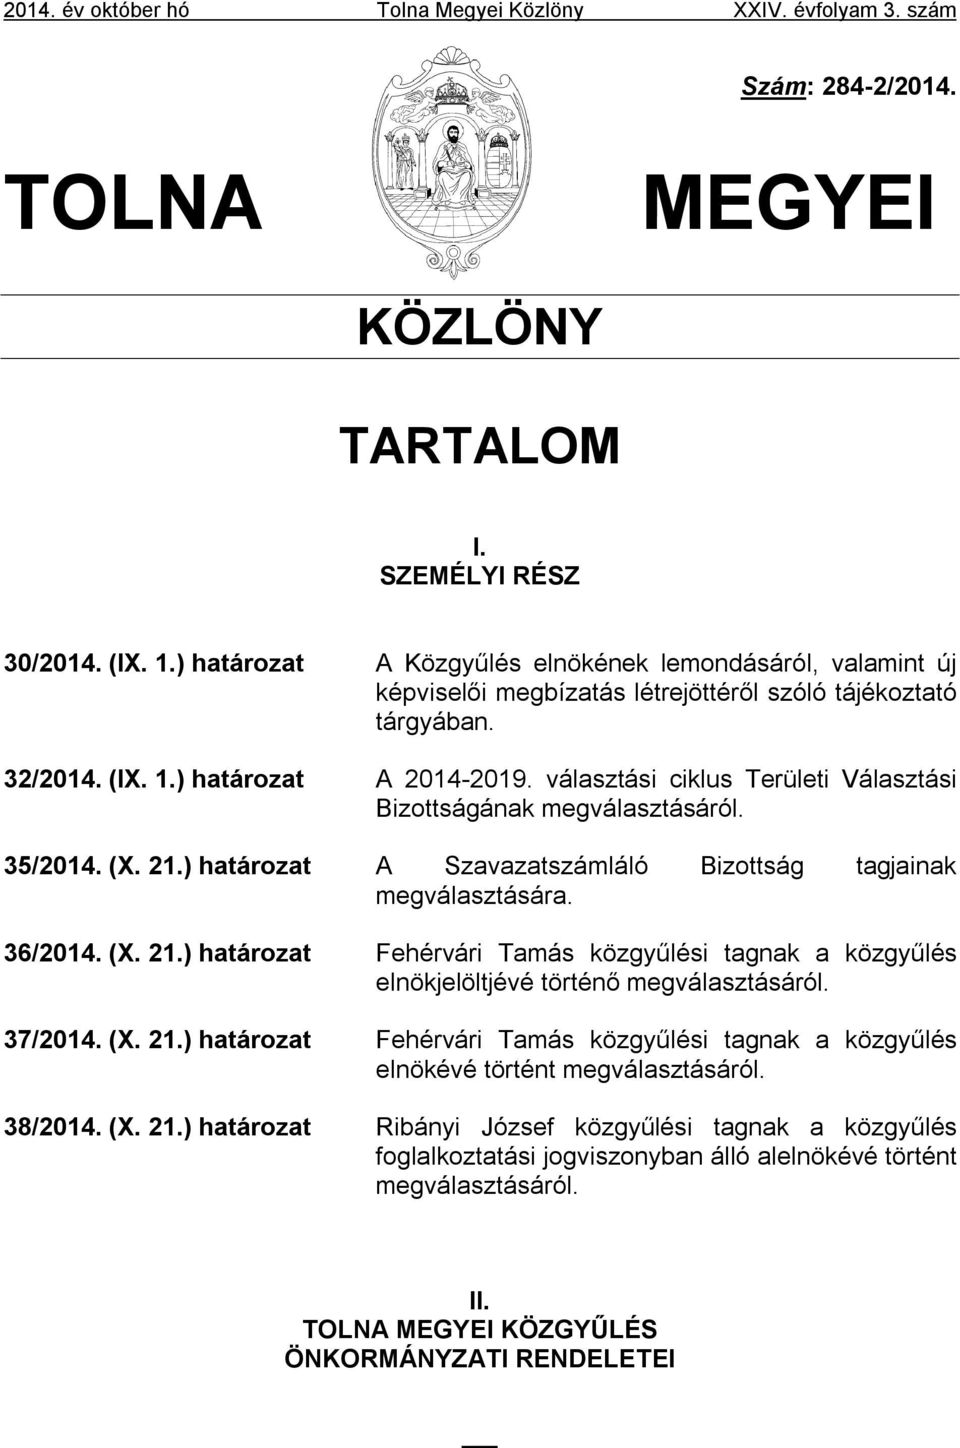 választási ciklus Területi Választási Bizottságának megválasztásáról. 35/2014. (X. 21.) határozat A Szavazatszámláló Bizottság tagjainak megválasztására. 36/2014. (X. 21.) határozat Fehérvári Tamás közgyűlési tagnak a közgyűlés elnökjelöltjévé történő megválasztásáról.